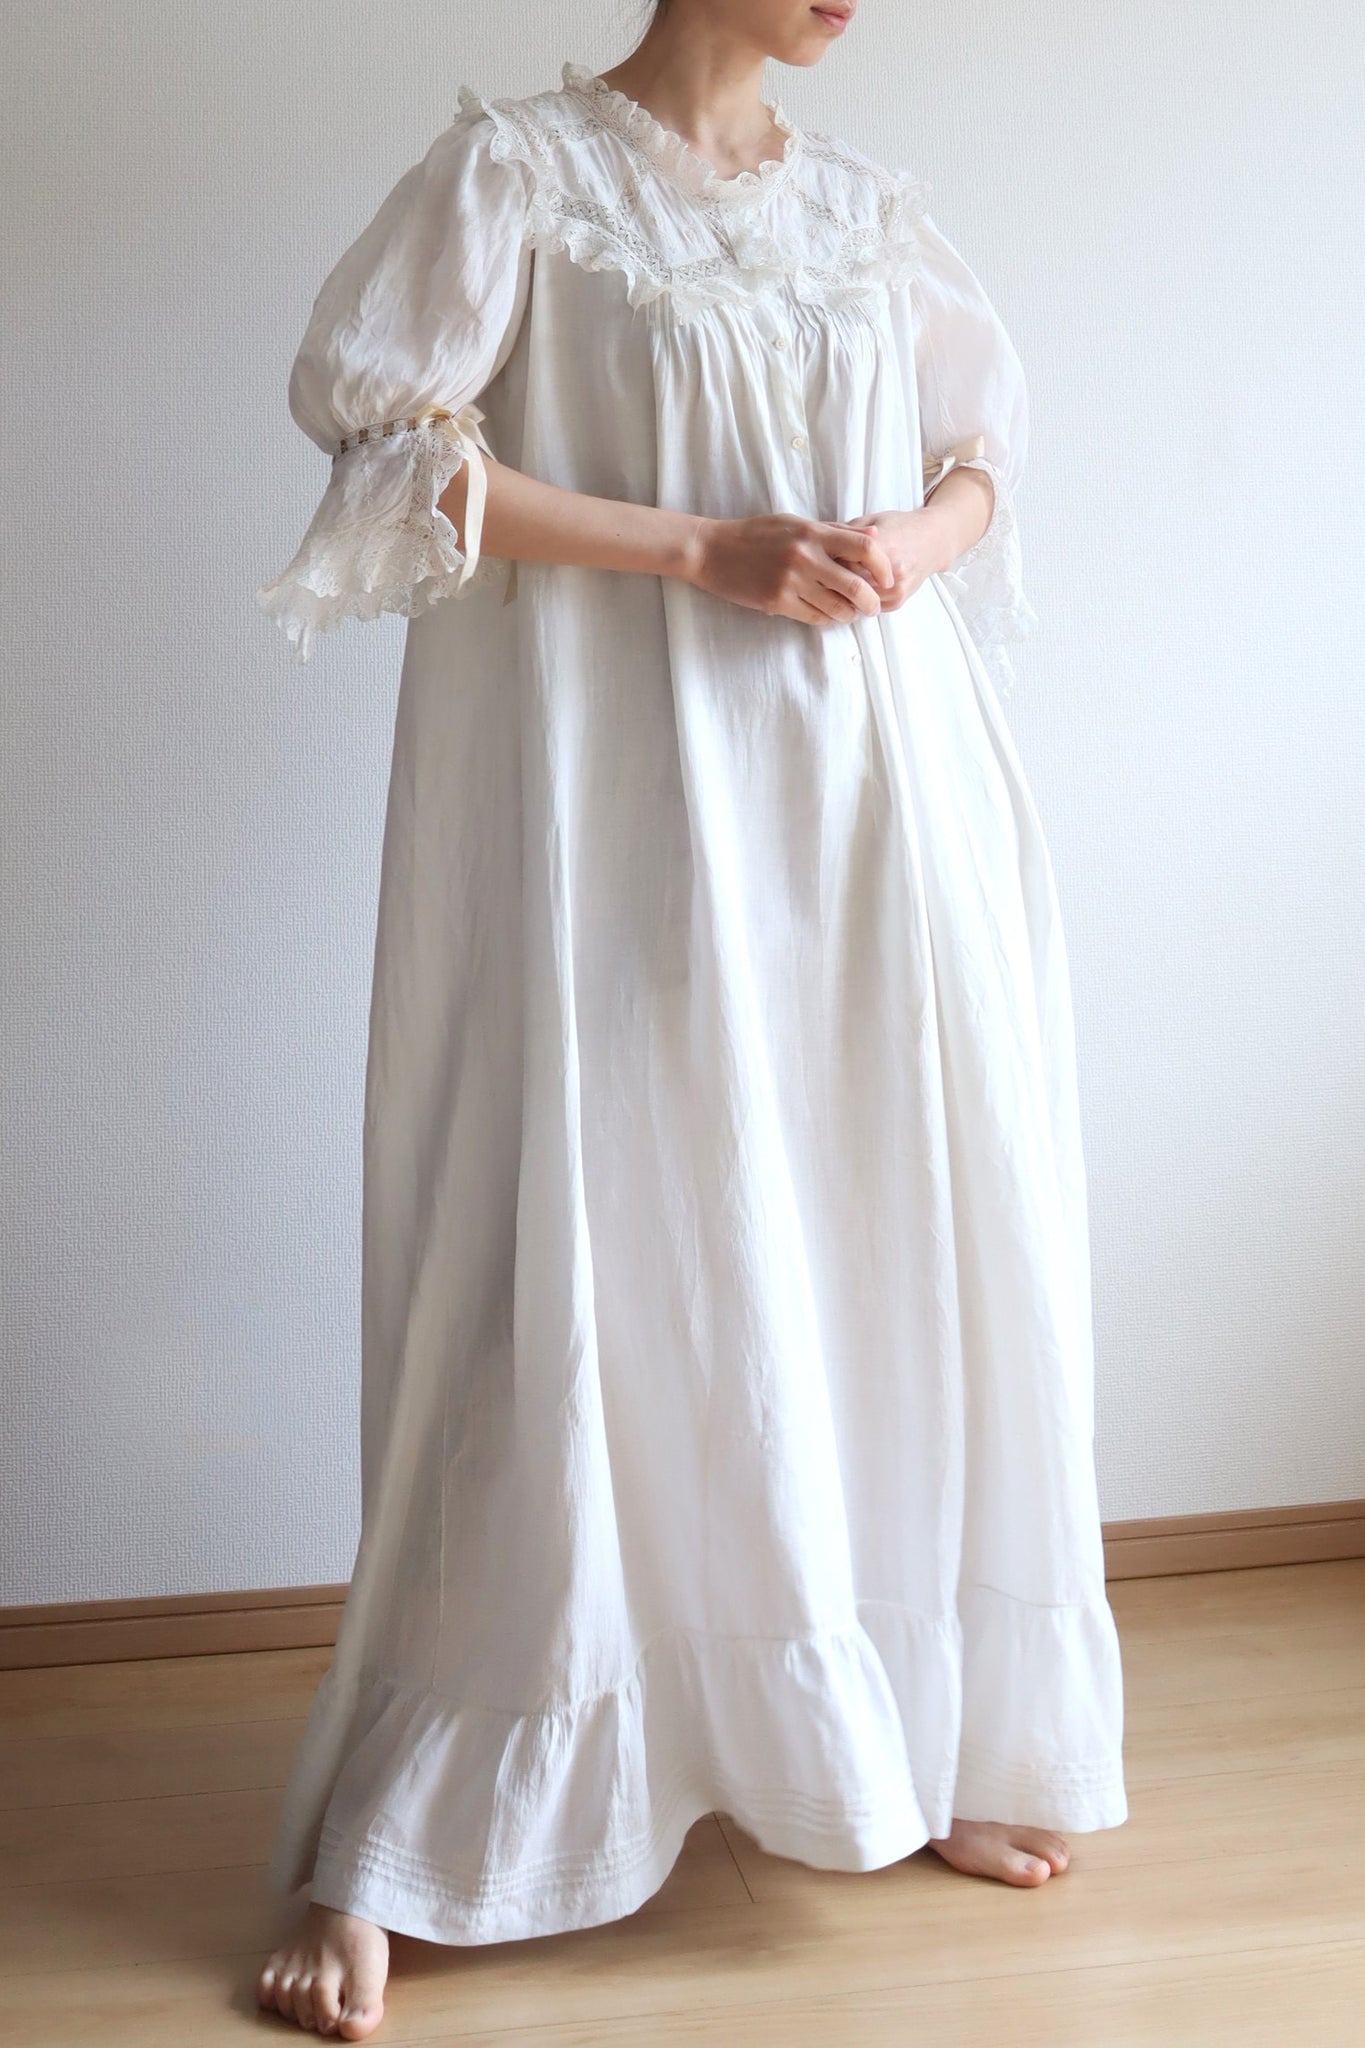 1900s Puff Sleeve Lawn Linen Dress